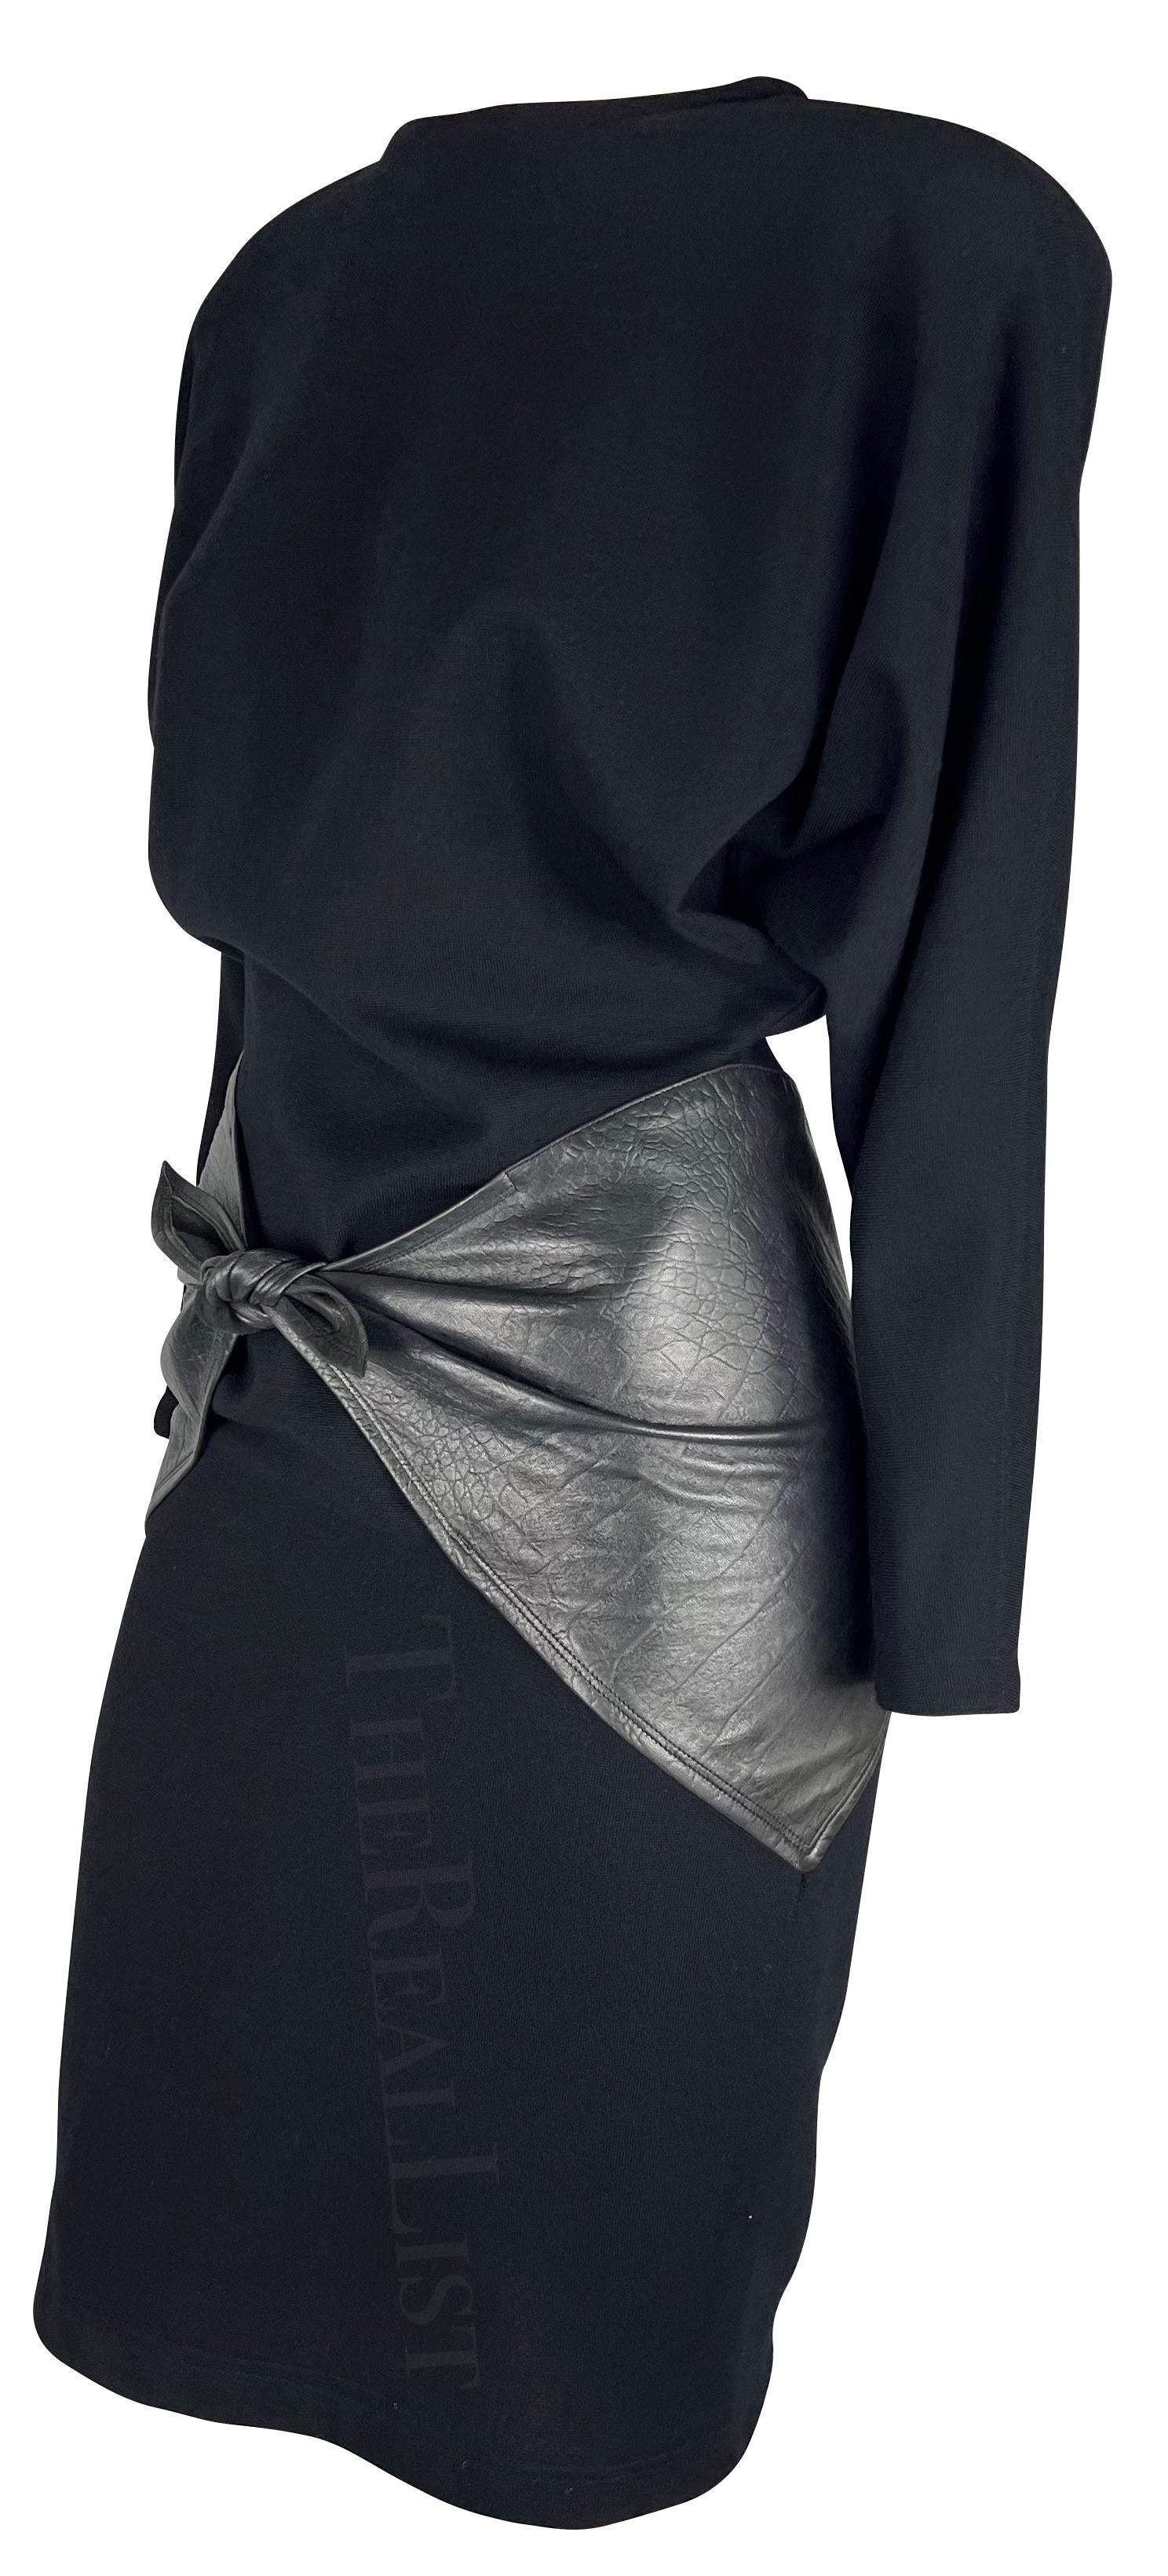 Wir präsentieren ein schwarzes Kleid aus Strick und Leder von Gianni Versace, entworfen von Gianni Versace. Dieses exquisite langärmelige Kleid aus den glamourösen 1980er-Jahren greift mit seinen integrierten Schulterpolstern und dem übergroßen